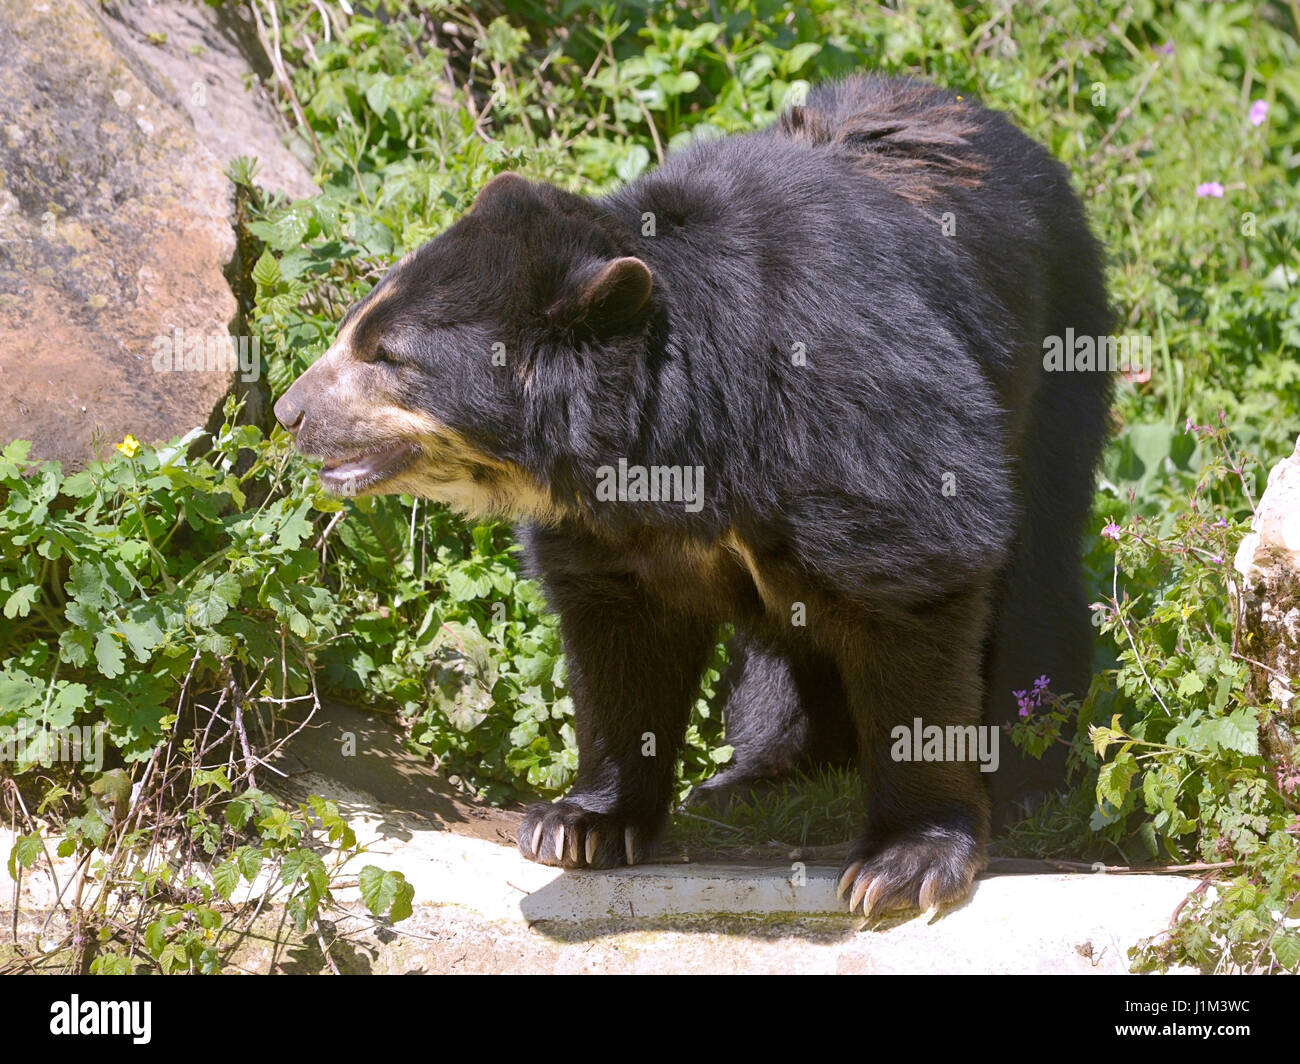 L'ours andin (Tremarctos ornatus) debout parmi la végétation et les roches, également connu sous le nom de l'ours à lunettes Banque D'Images